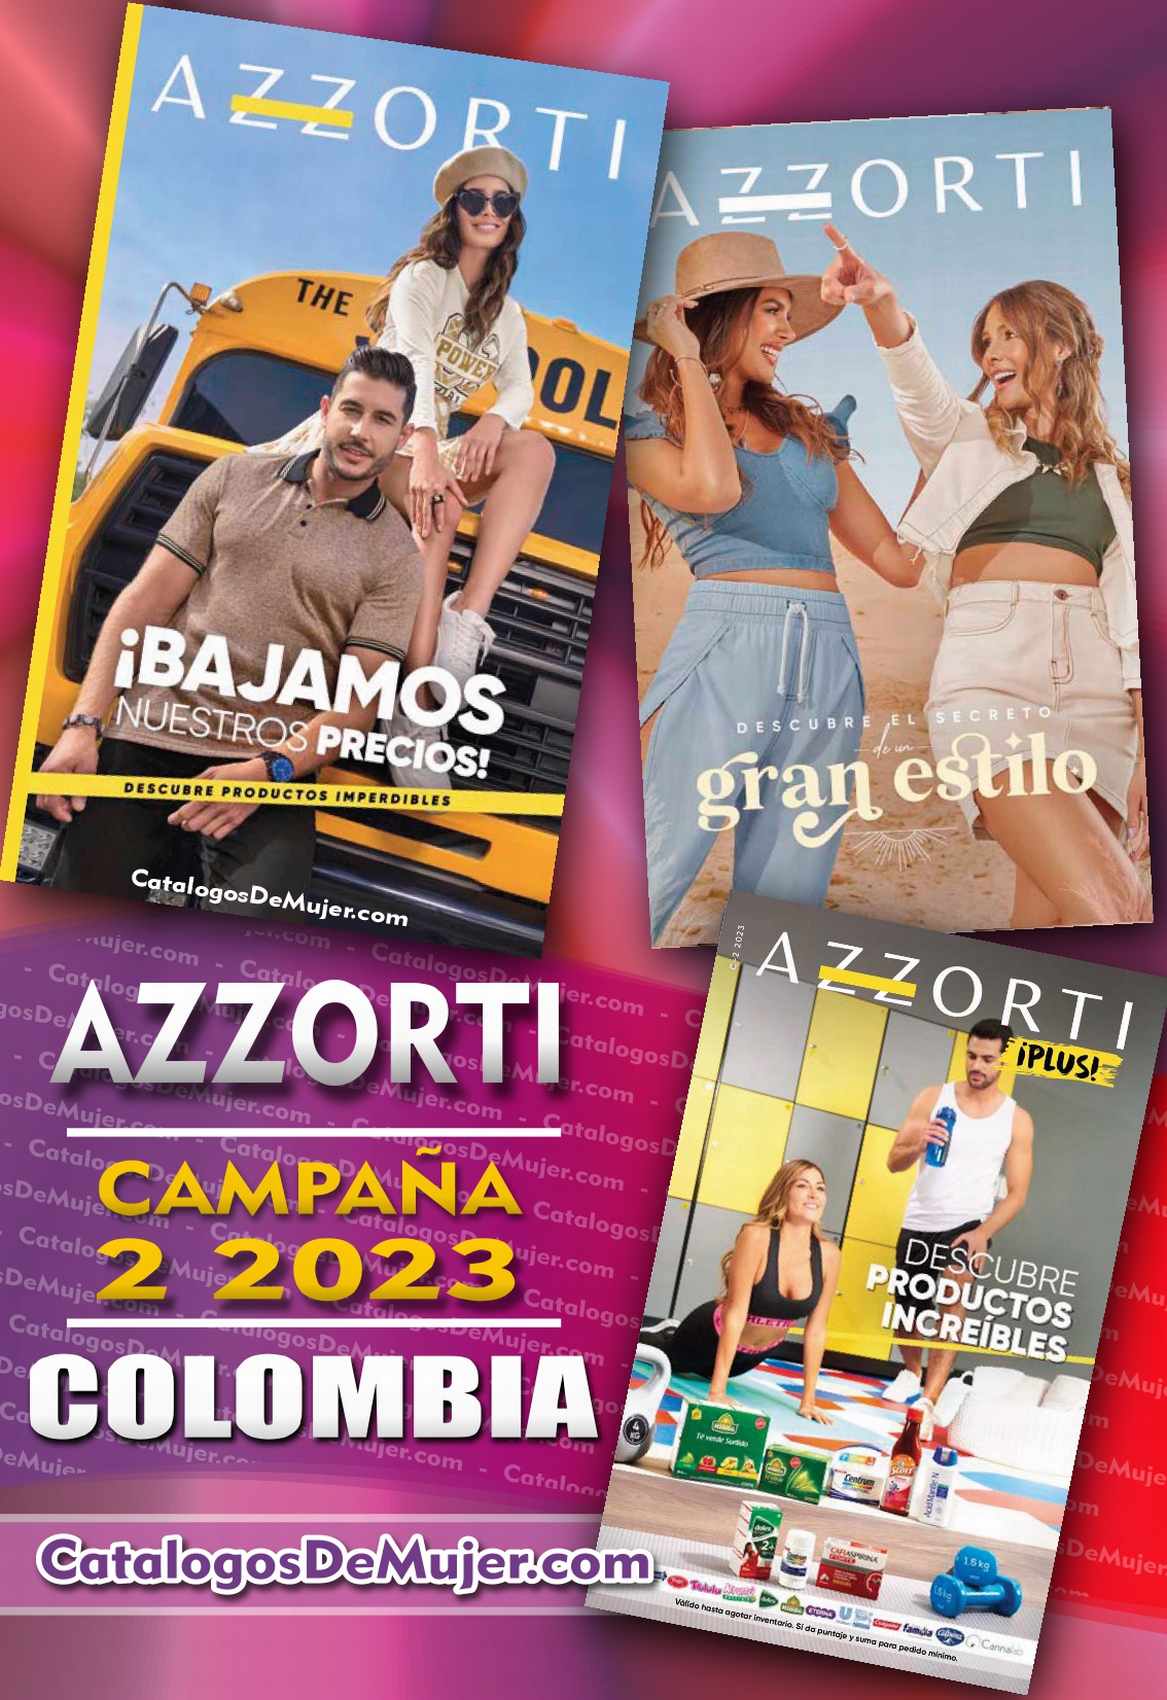 azzorti campaña 2 2023 colombia